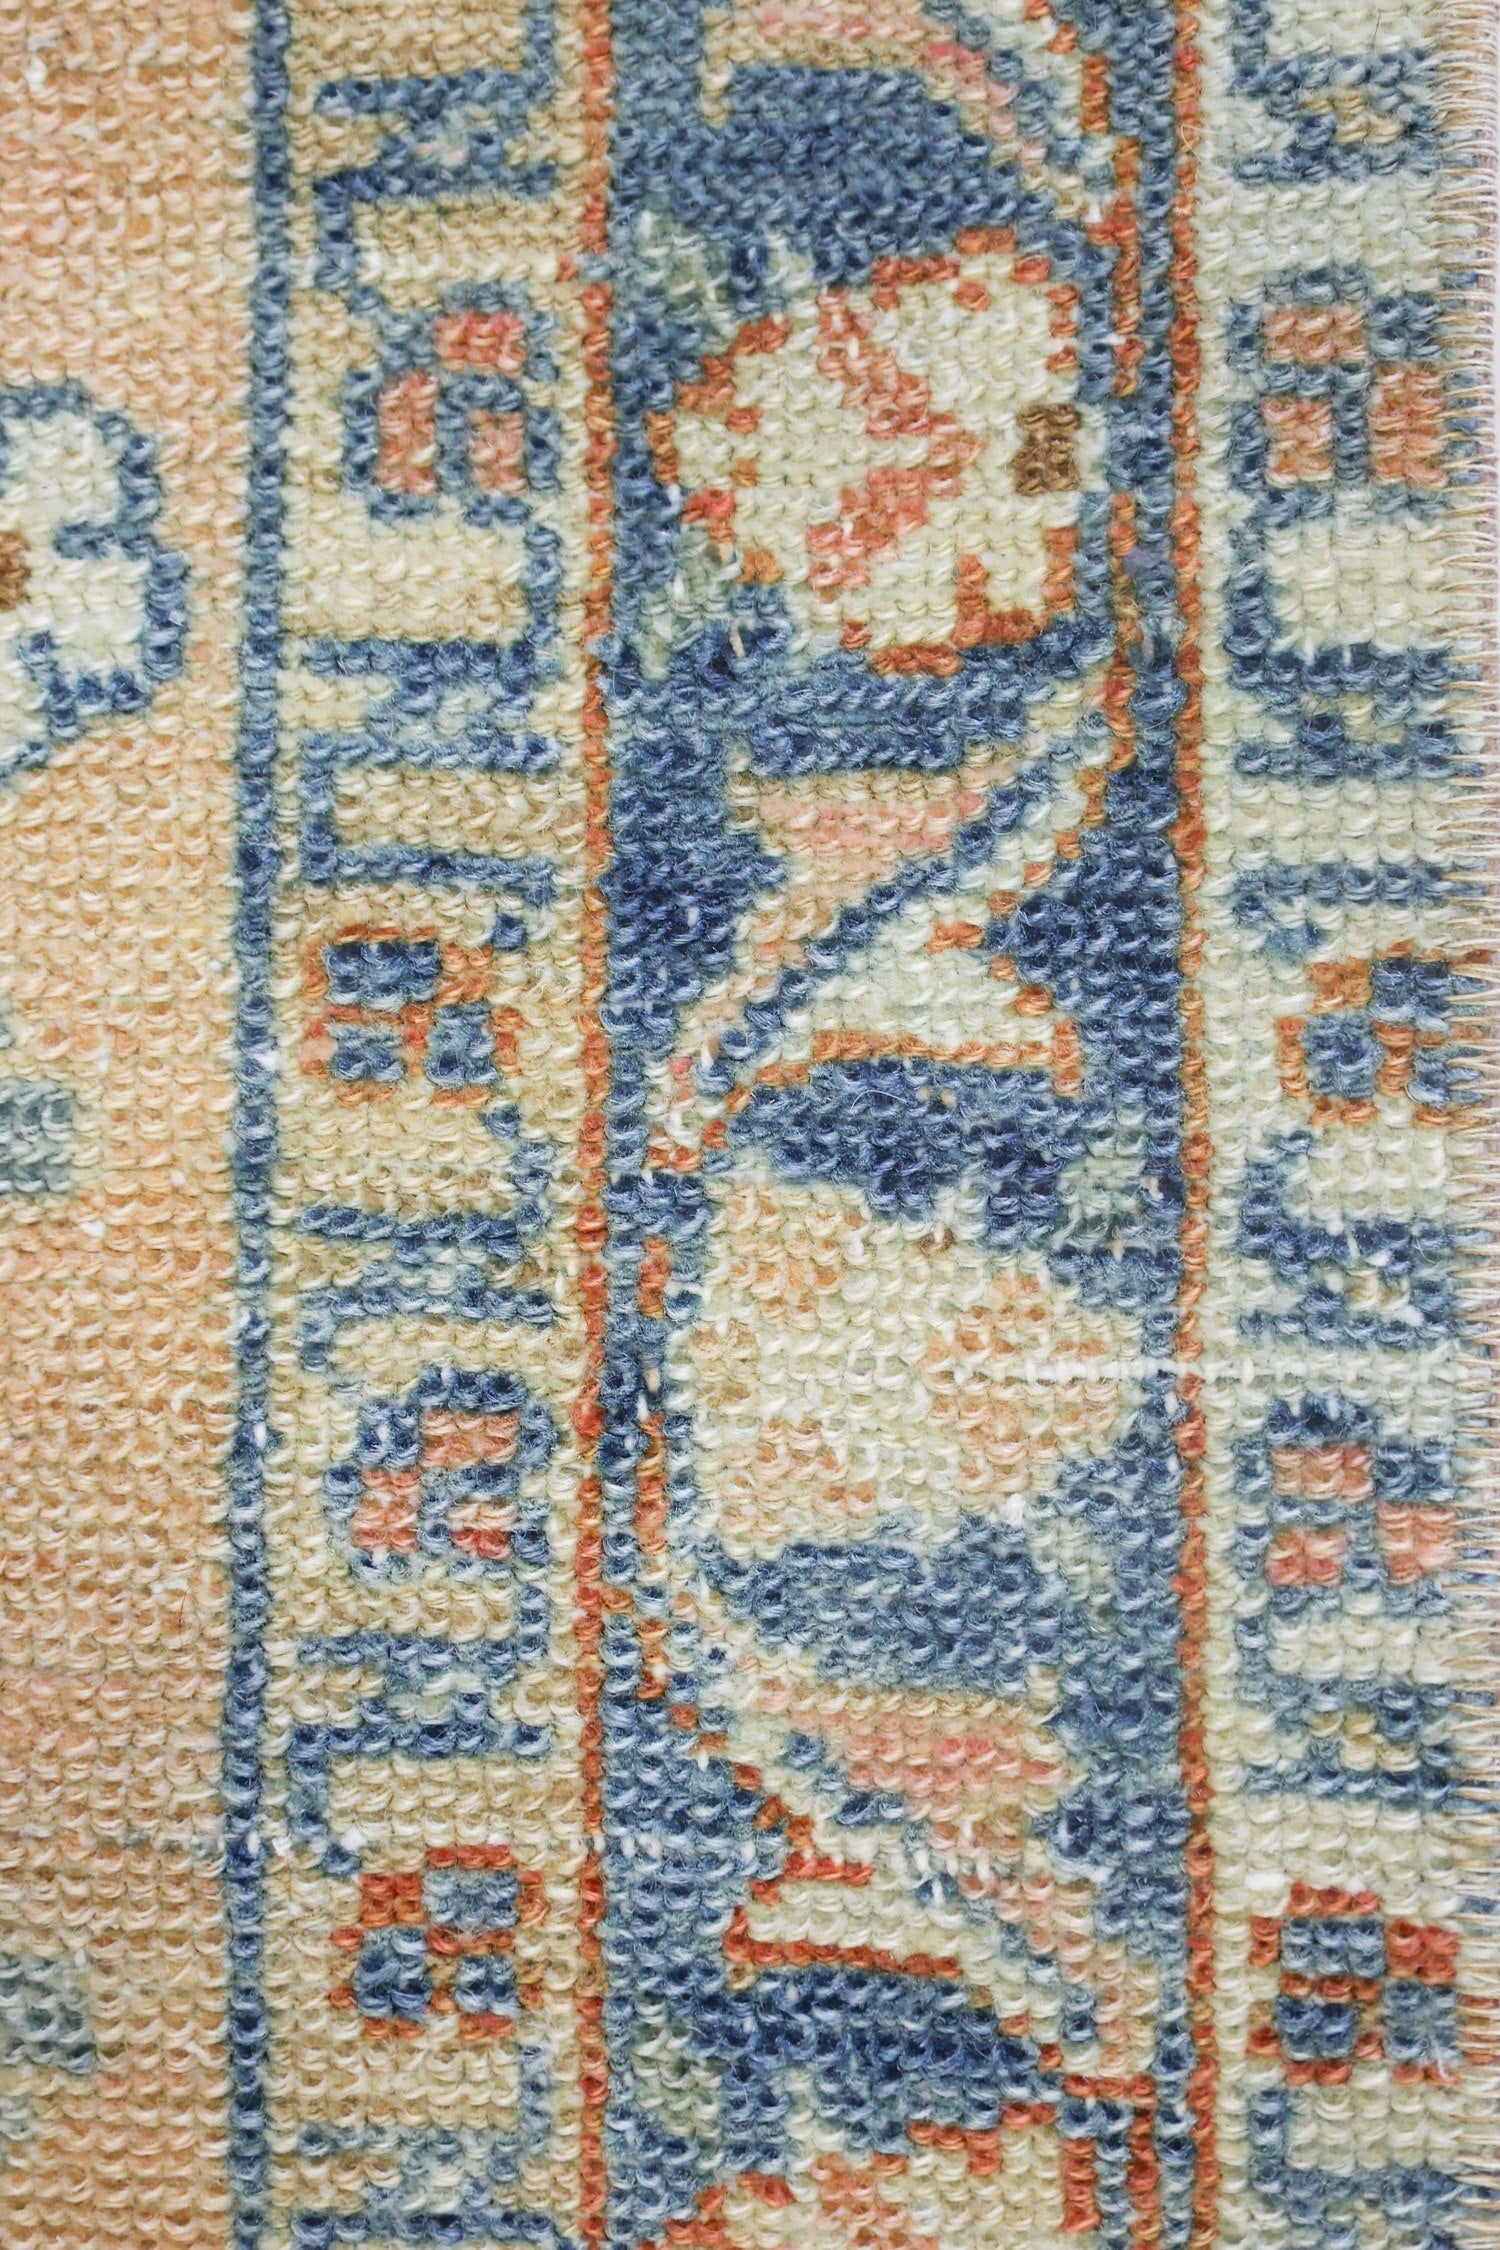 Vintage Lilihan Handwoven Traditional Rug, J73087